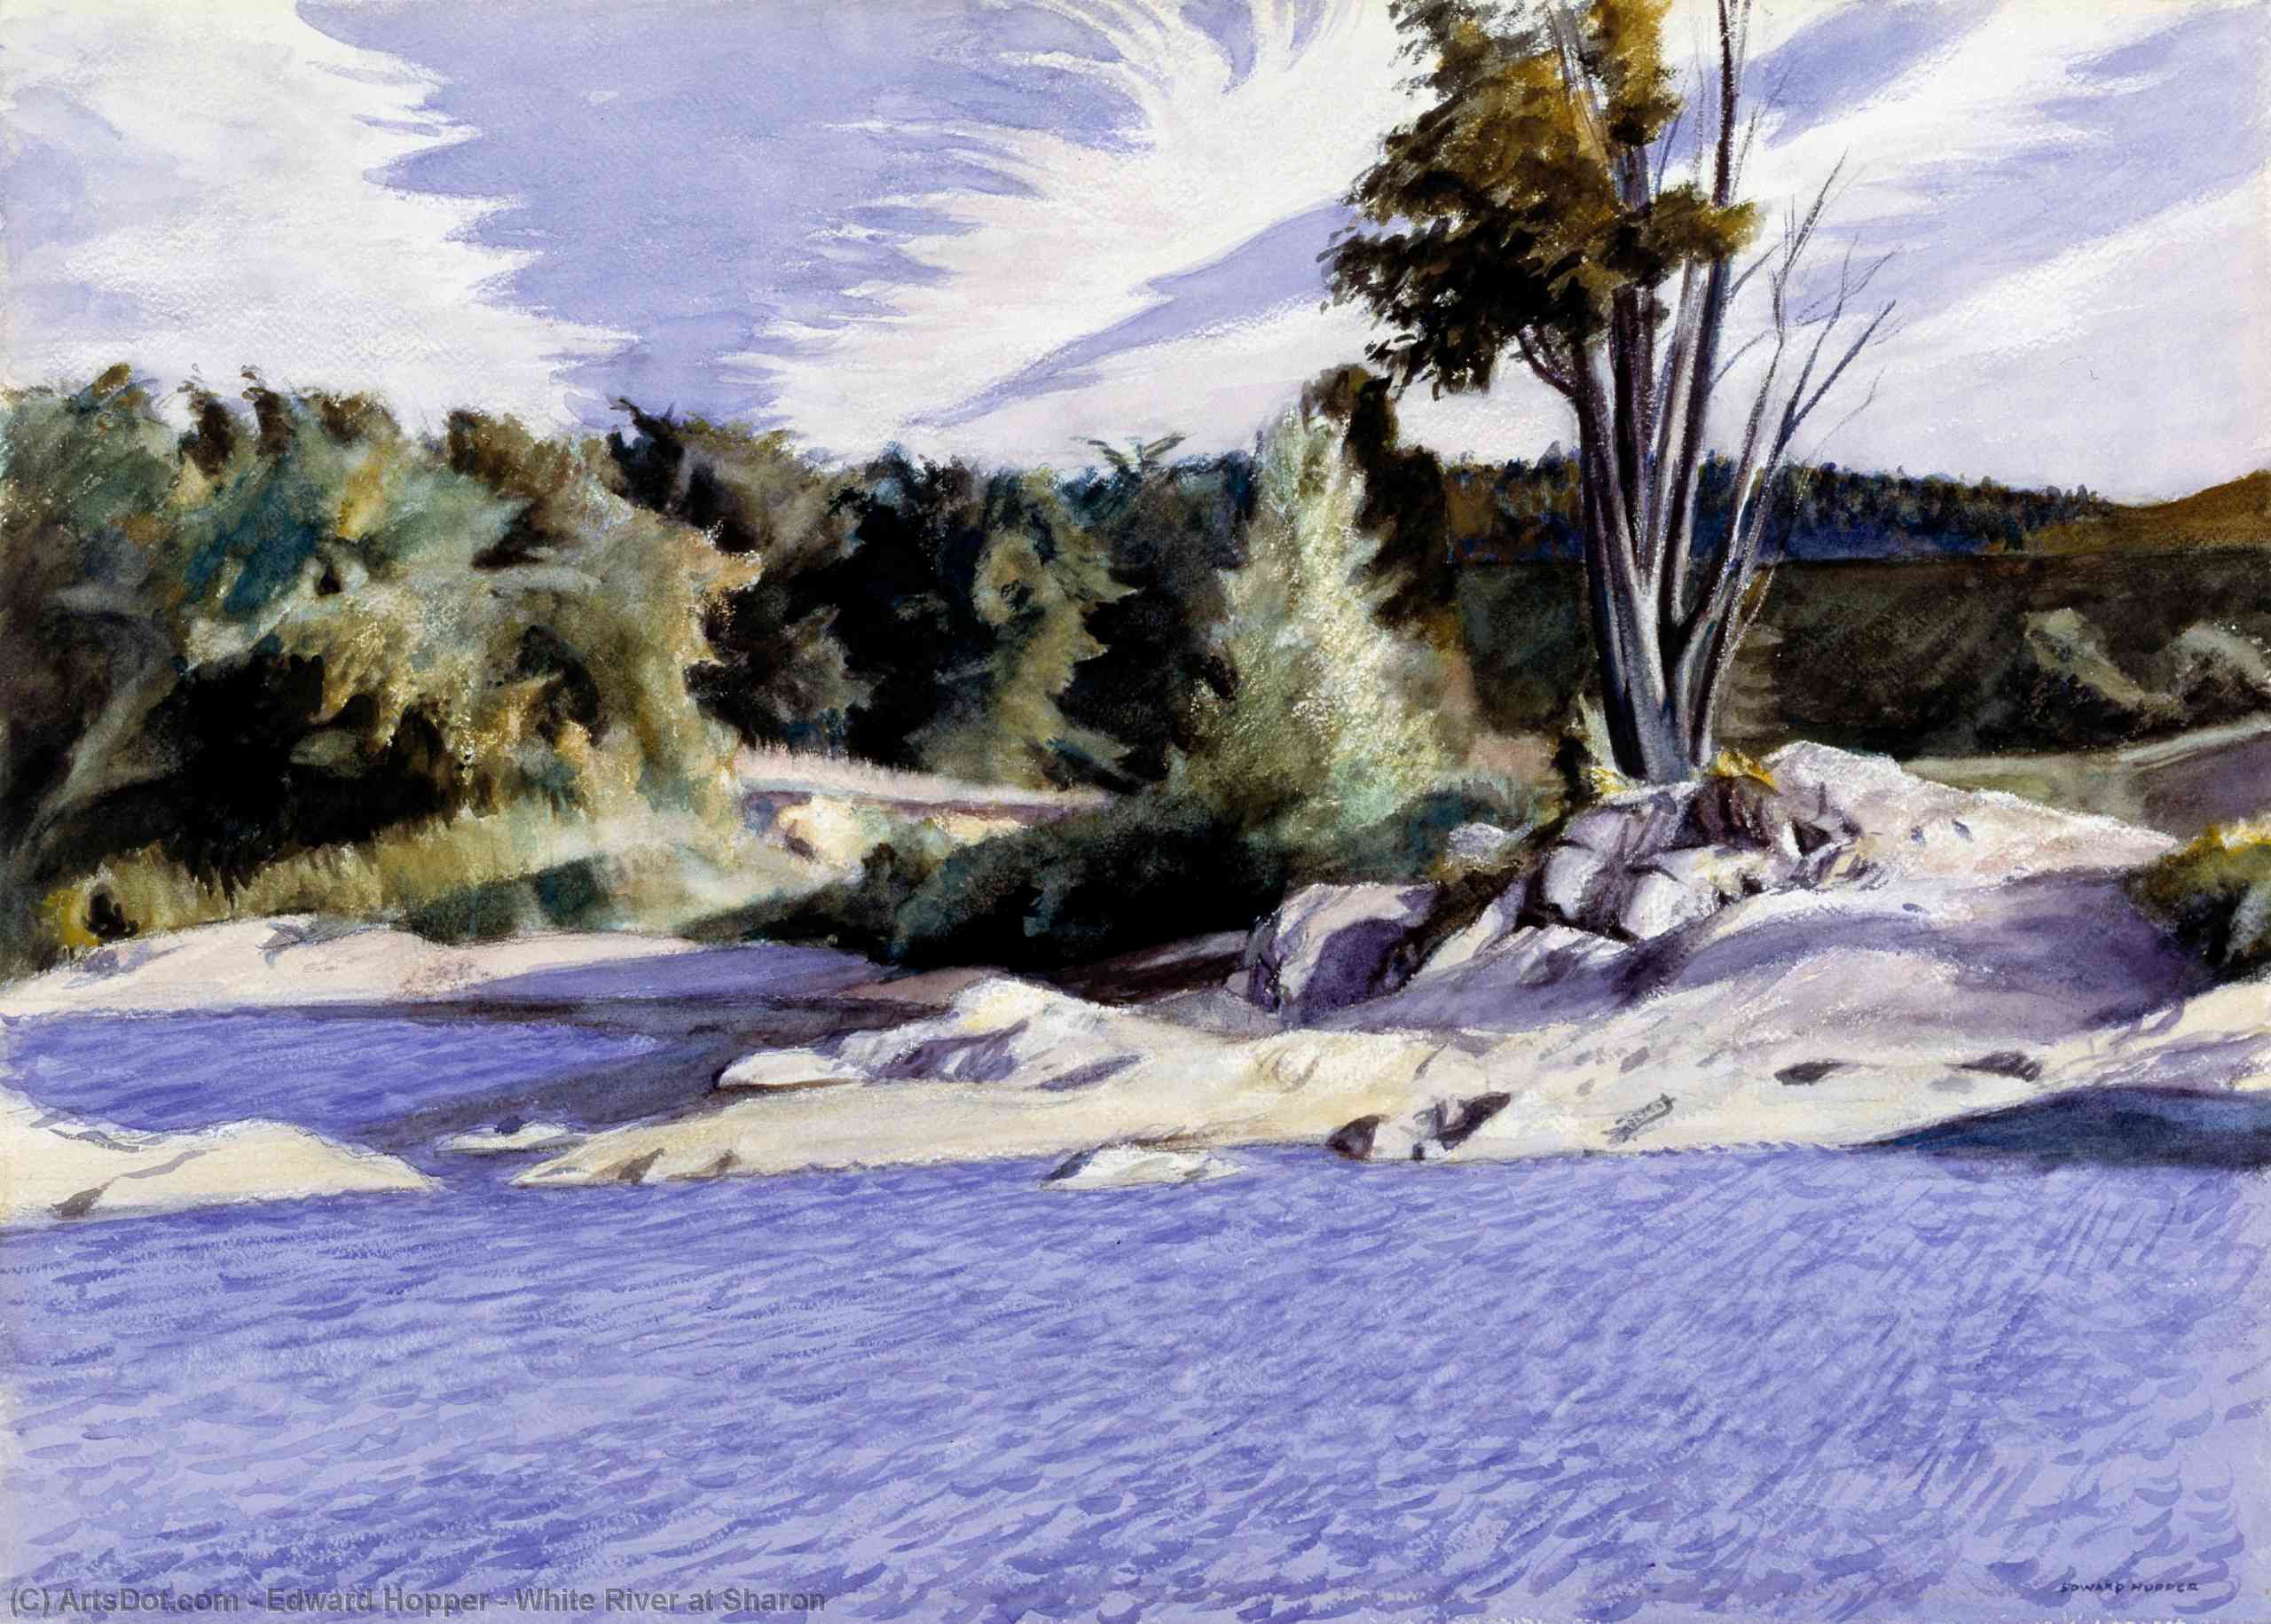 WikiOO.org - Güzel Sanatlar Ansiklopedisi - Resim, Resimler Edward Hopper - White River at Sharon